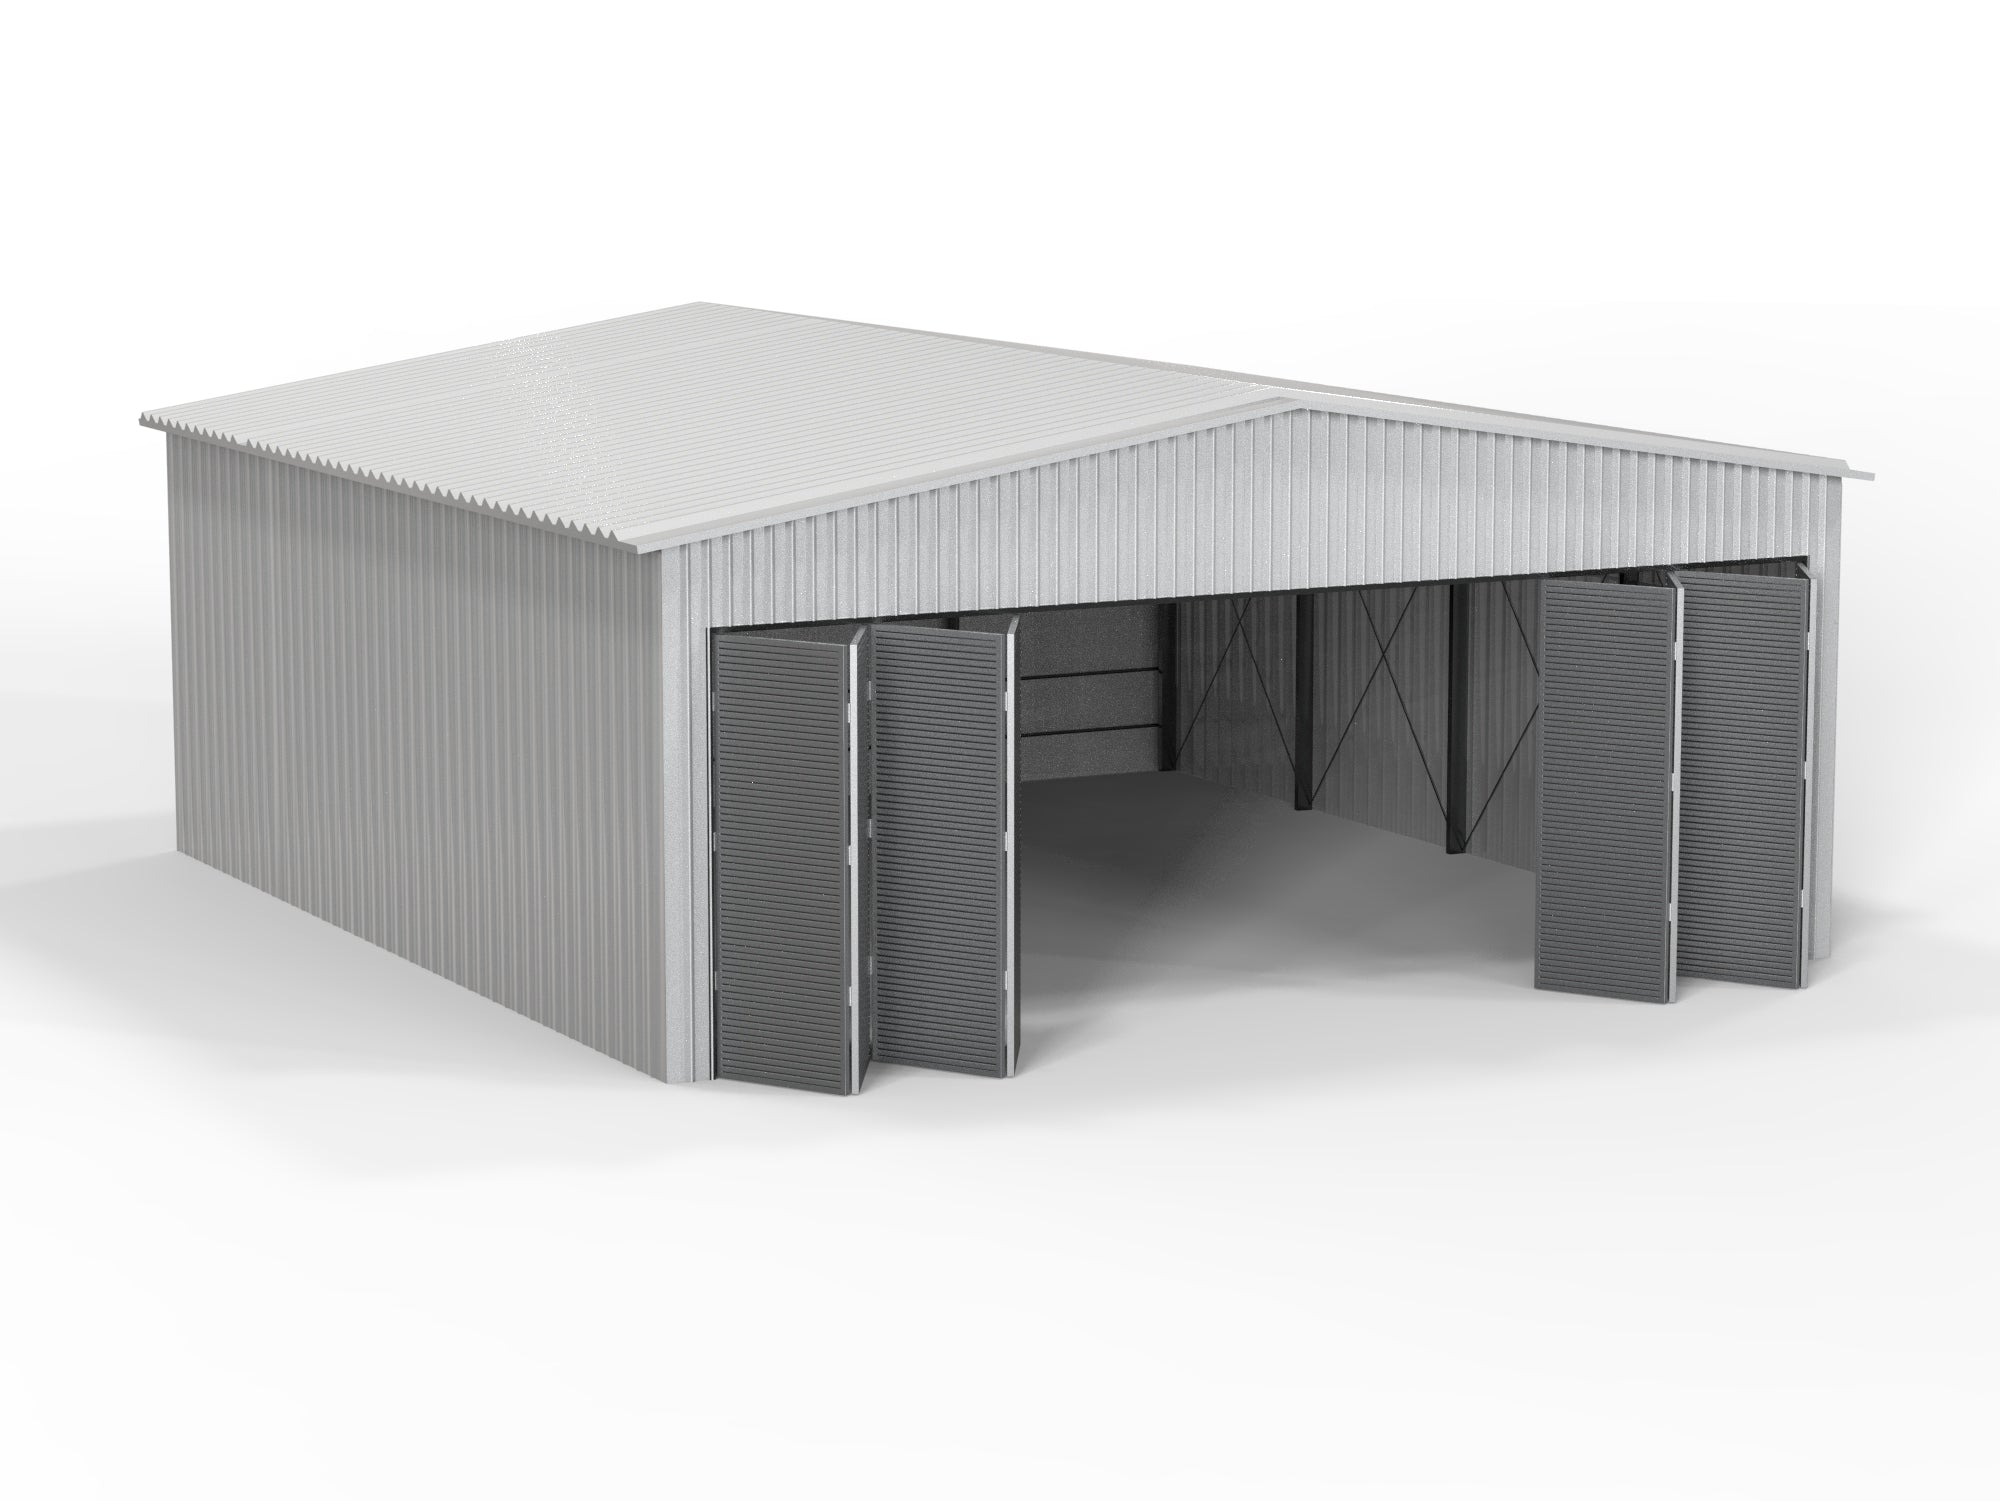 Insulated Aircraft Hangars - Bi-folding Doors - H Column beam frame